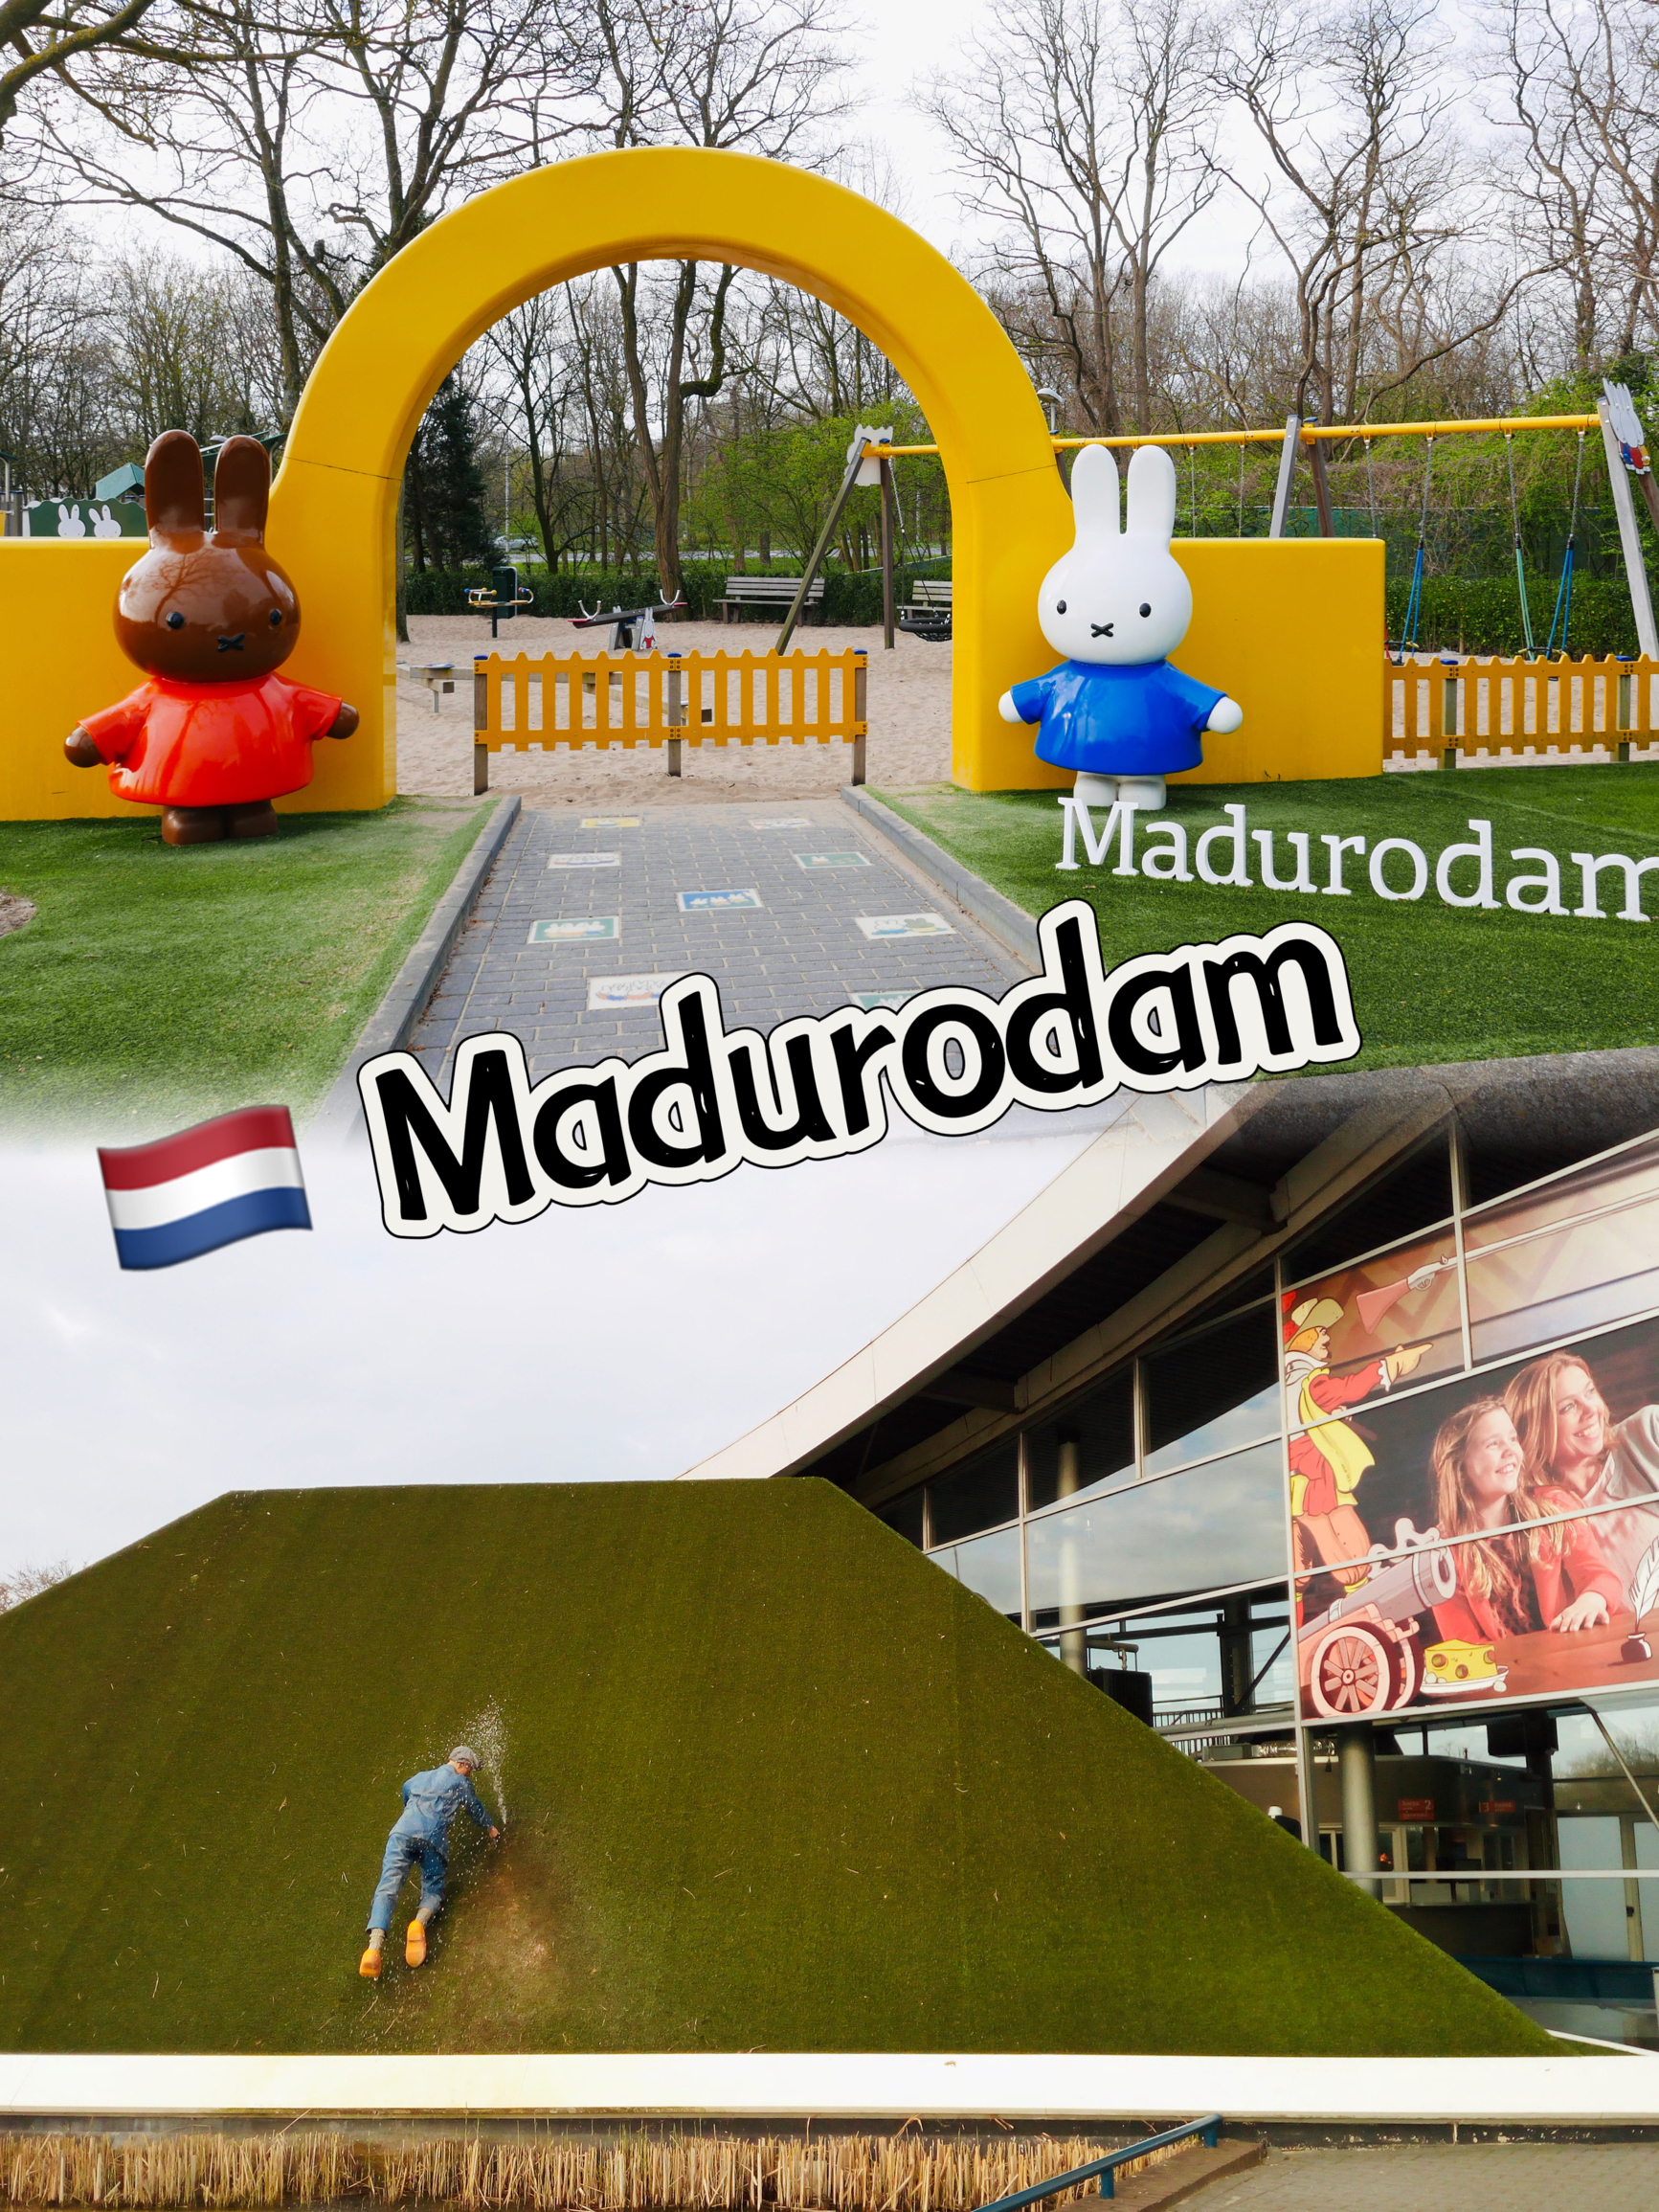 荷兰旅行|马德罗丹小人国